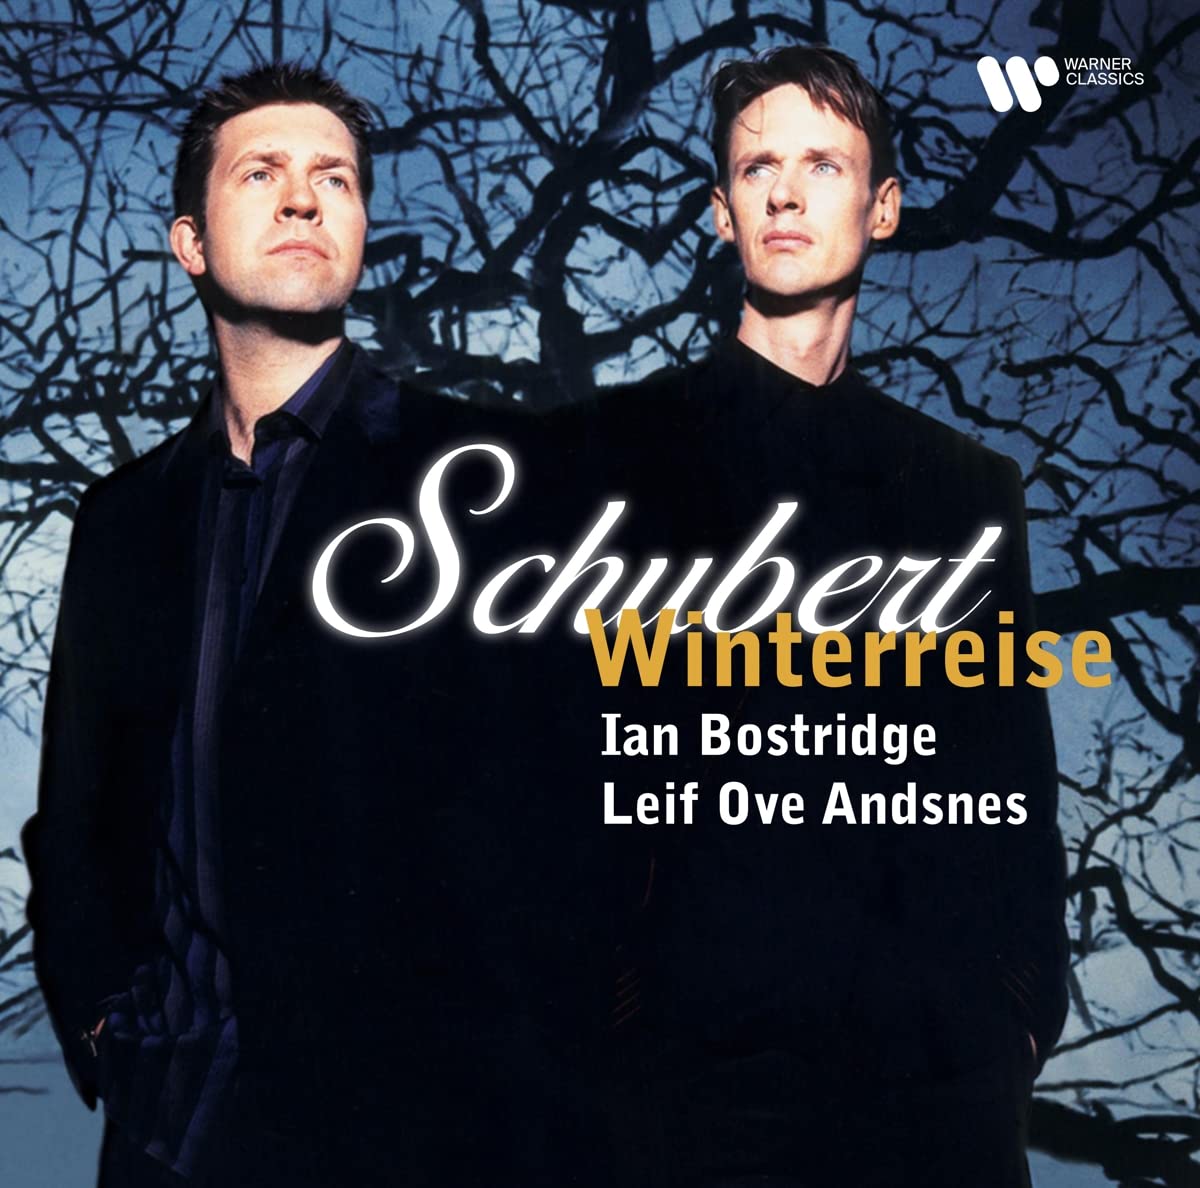 Виниловая пластинка Bostridge, Ian; Ove Andsnes, Leif, Schubert: Winterreise (5054197357329)